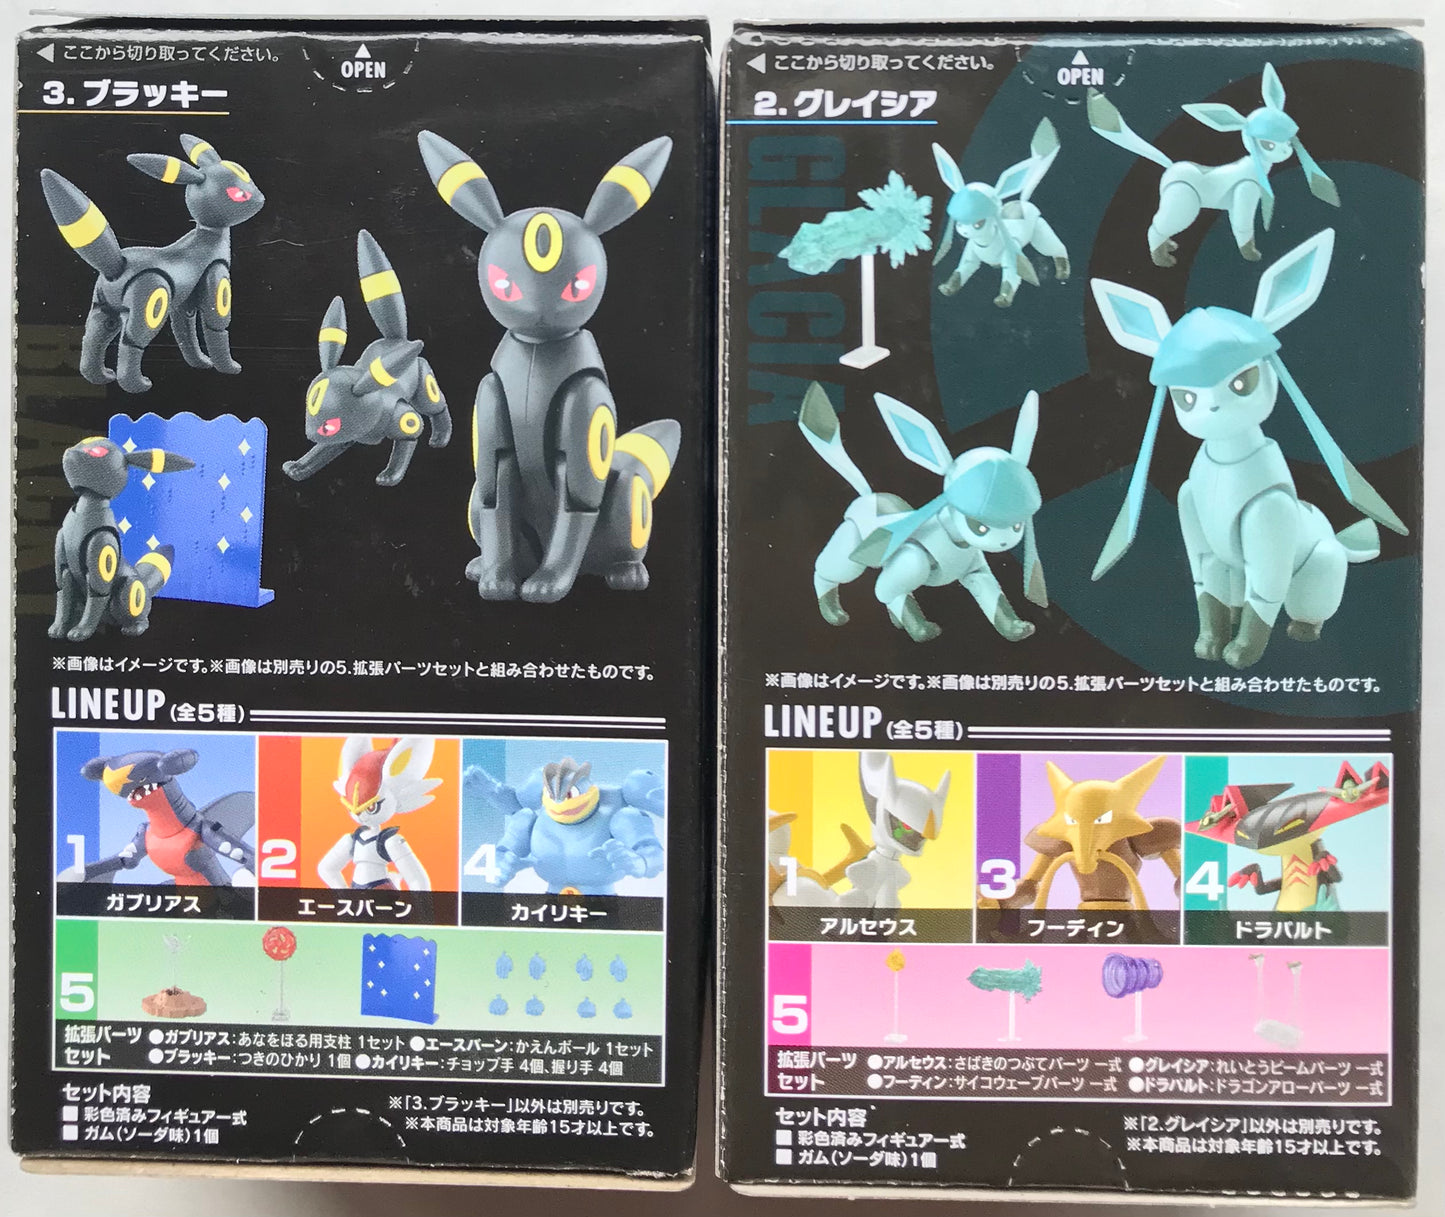 Pokémon Shodo Glaceon and Umbreon Bandai 3" Inch Figure Eevee BUNDLE/LOT